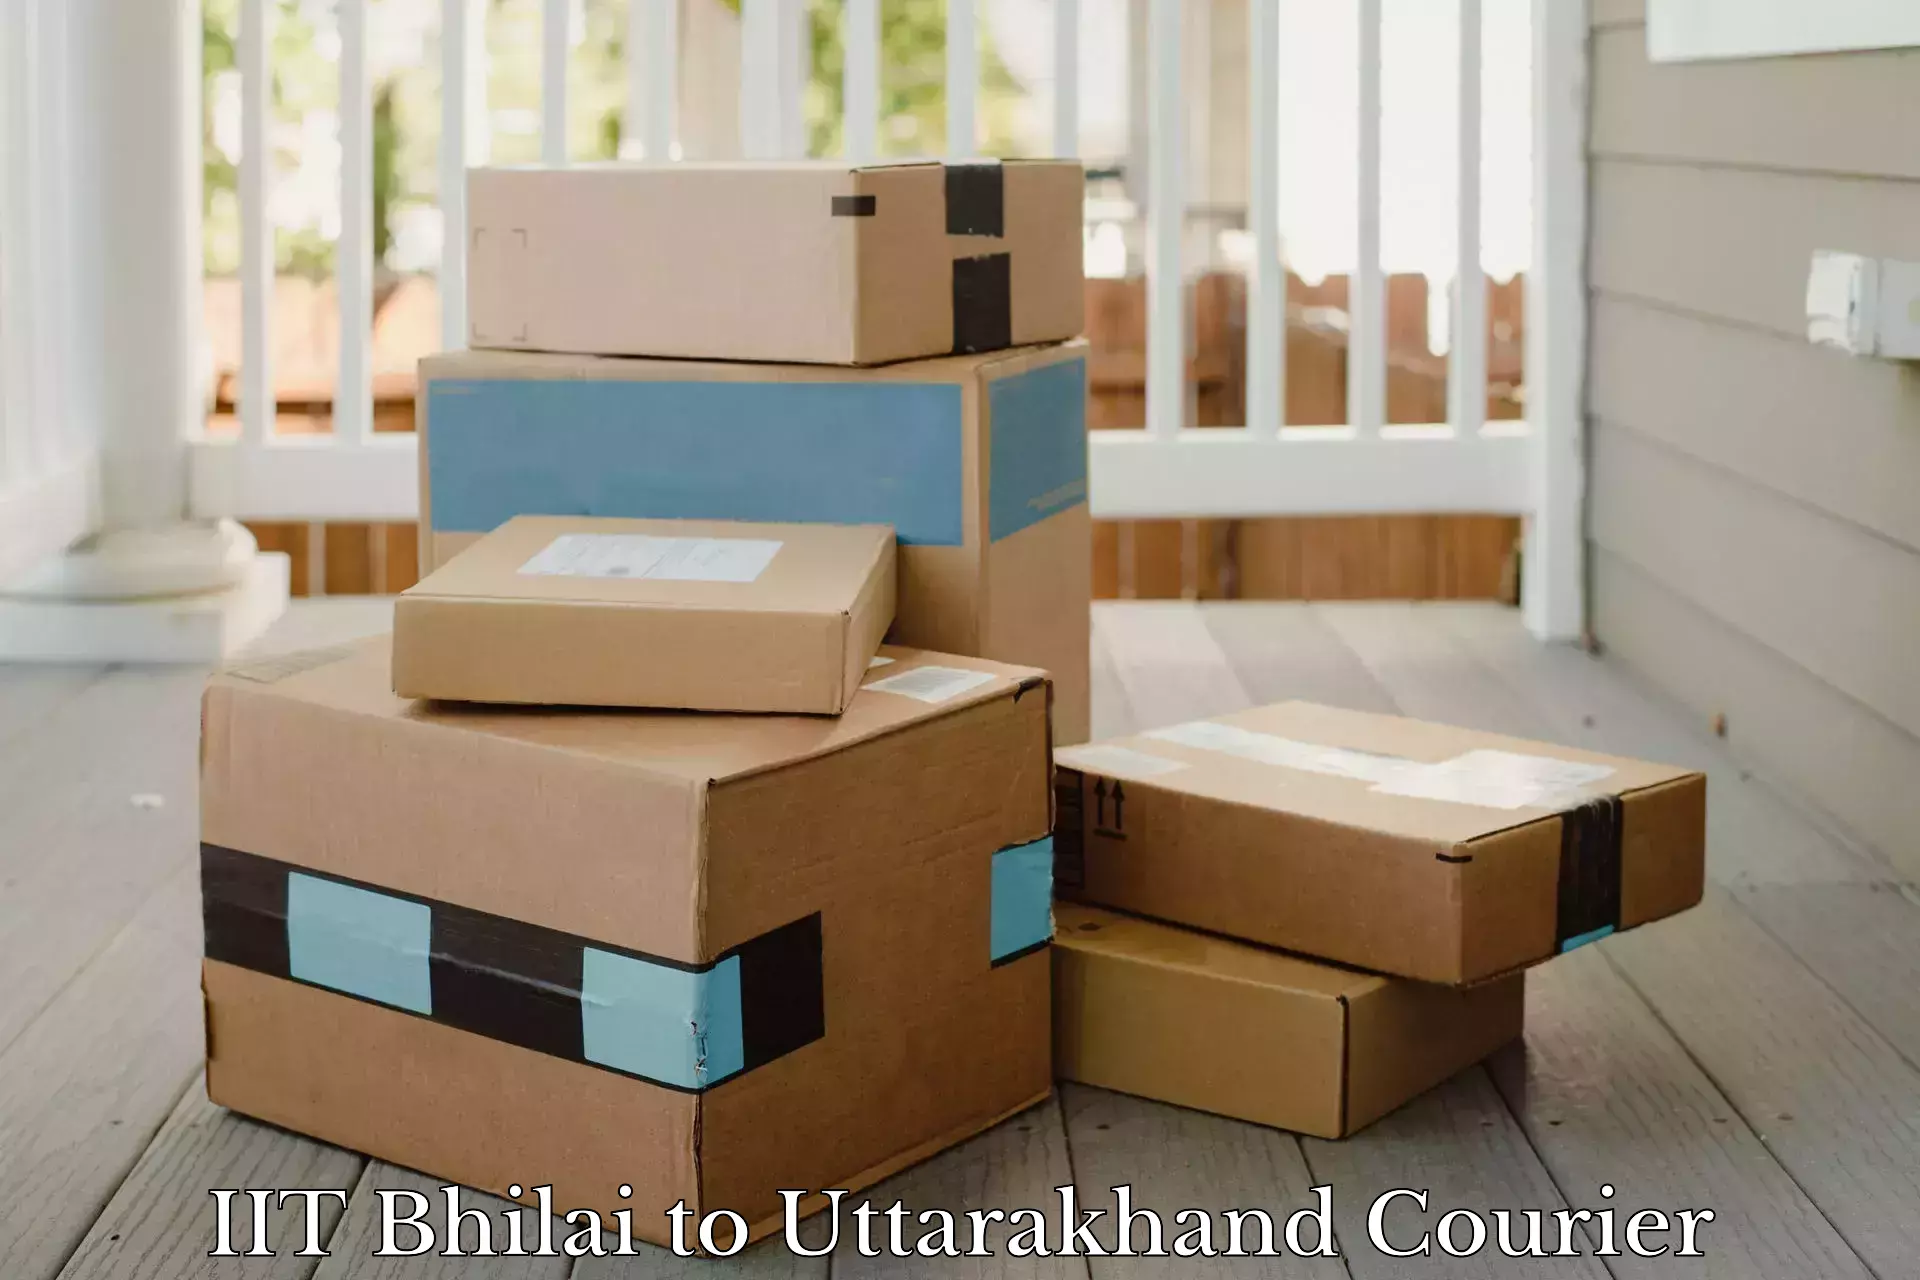 Efficient cargo services in IIT Bhilai to Uttarkashi